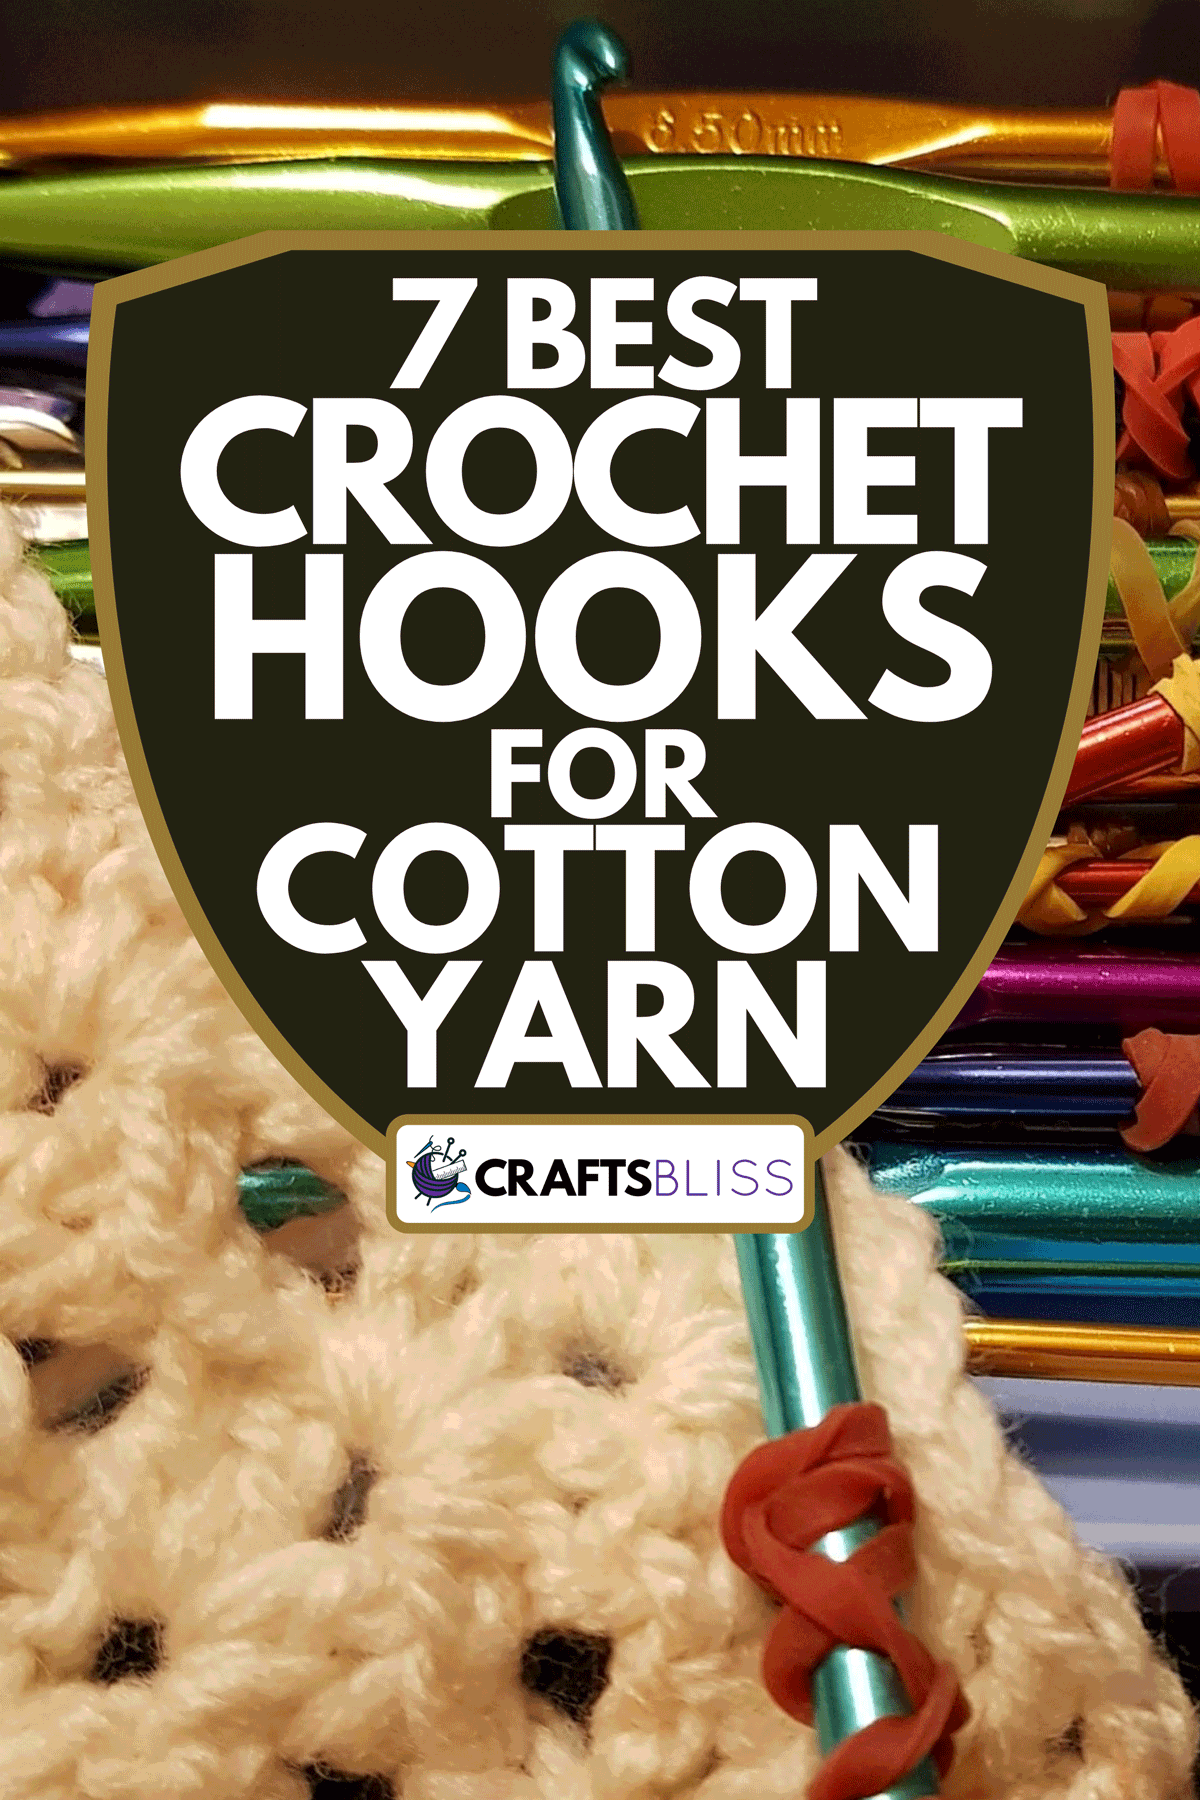 Crochet hooks with yarn, 7 Best Crochet Hooks For Cotton Yarn